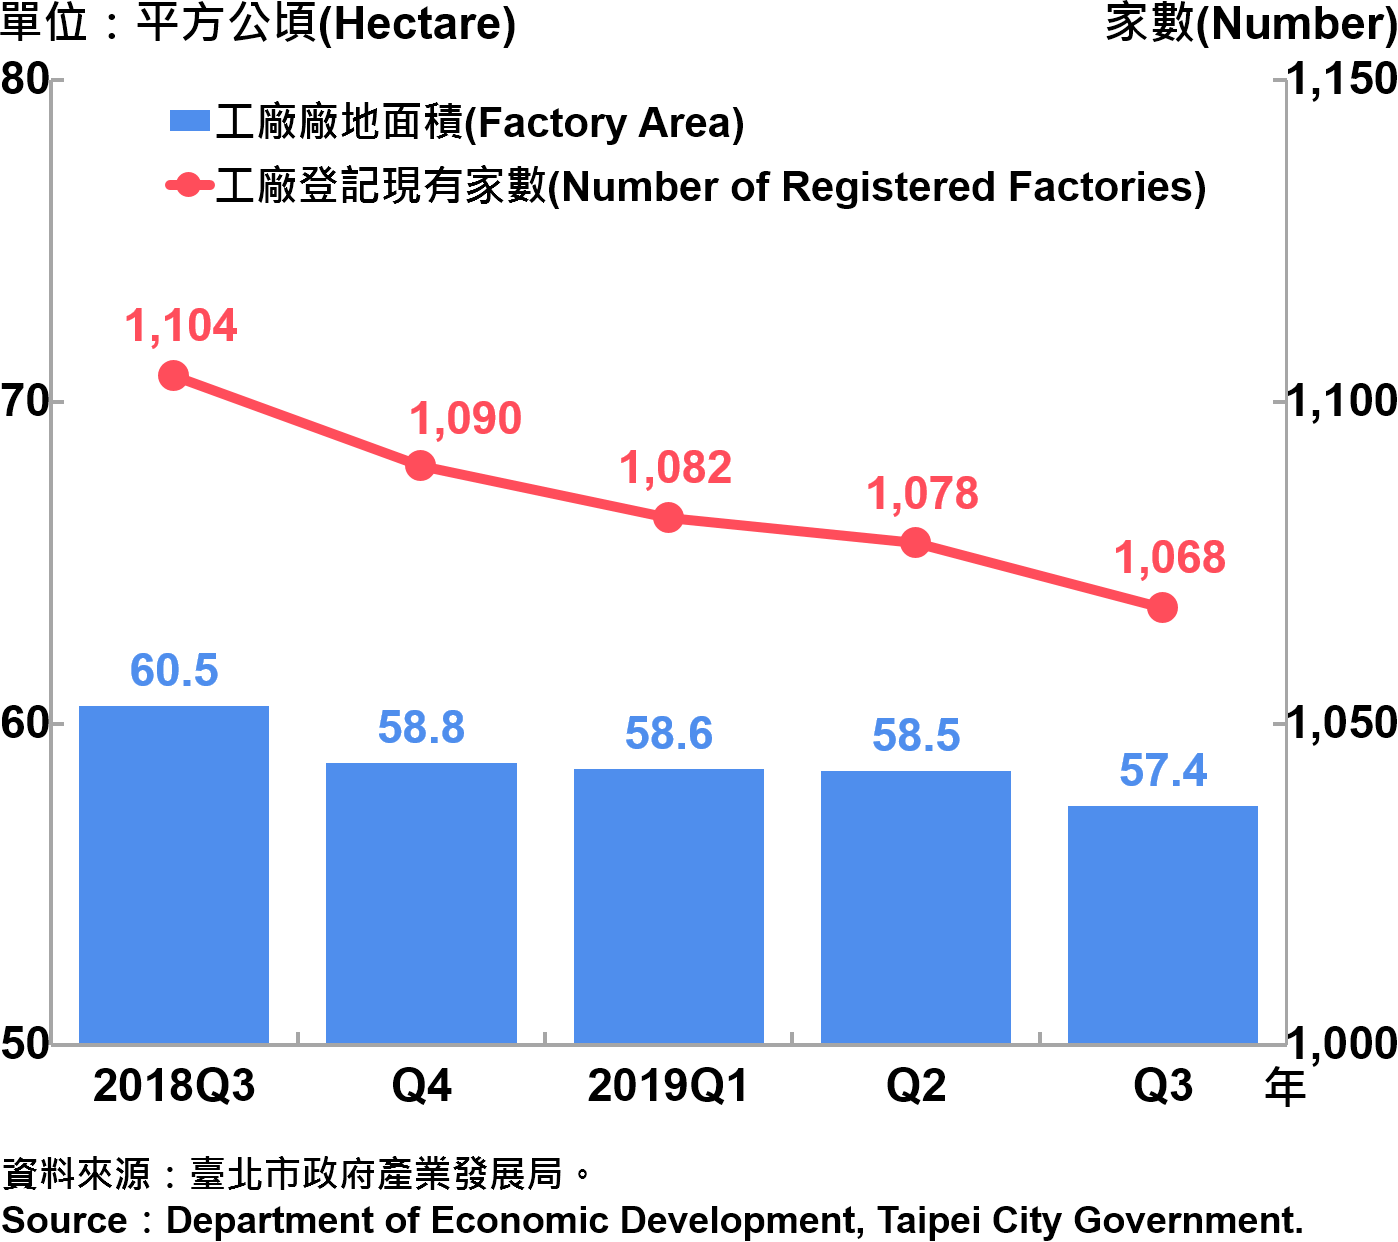 臺北市工廠登記家數及廠地面積—2019Q3 Factory Registration and Factory Area in Taipei City—2019Q3